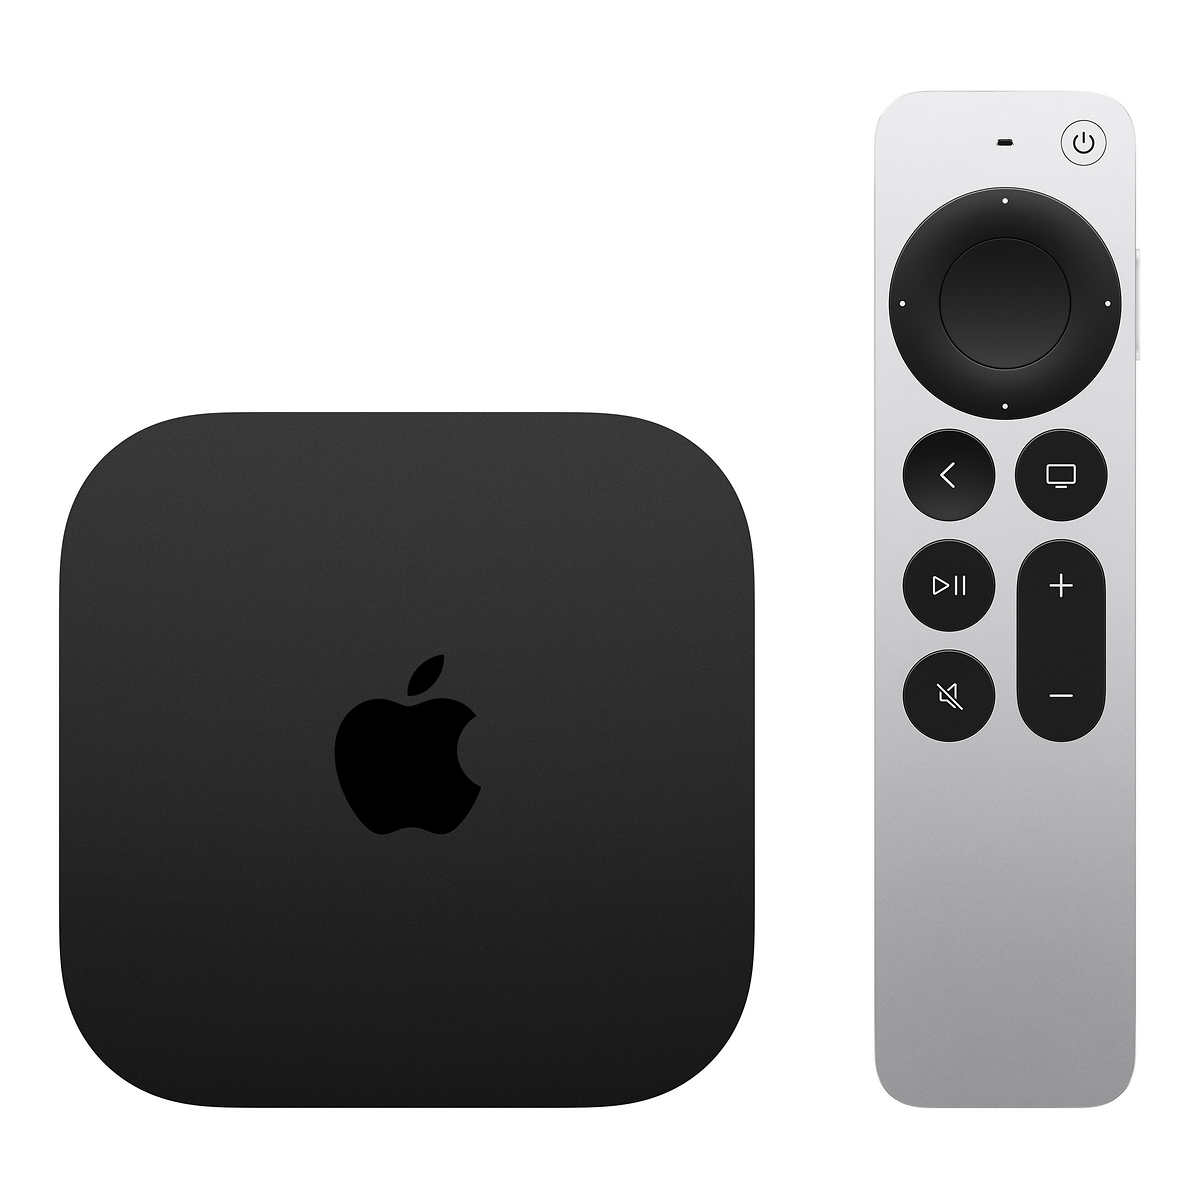 Latest 2022 Apple TV 4K 64GB (3rd generation) - Wi-Fi - $124.99 Costco